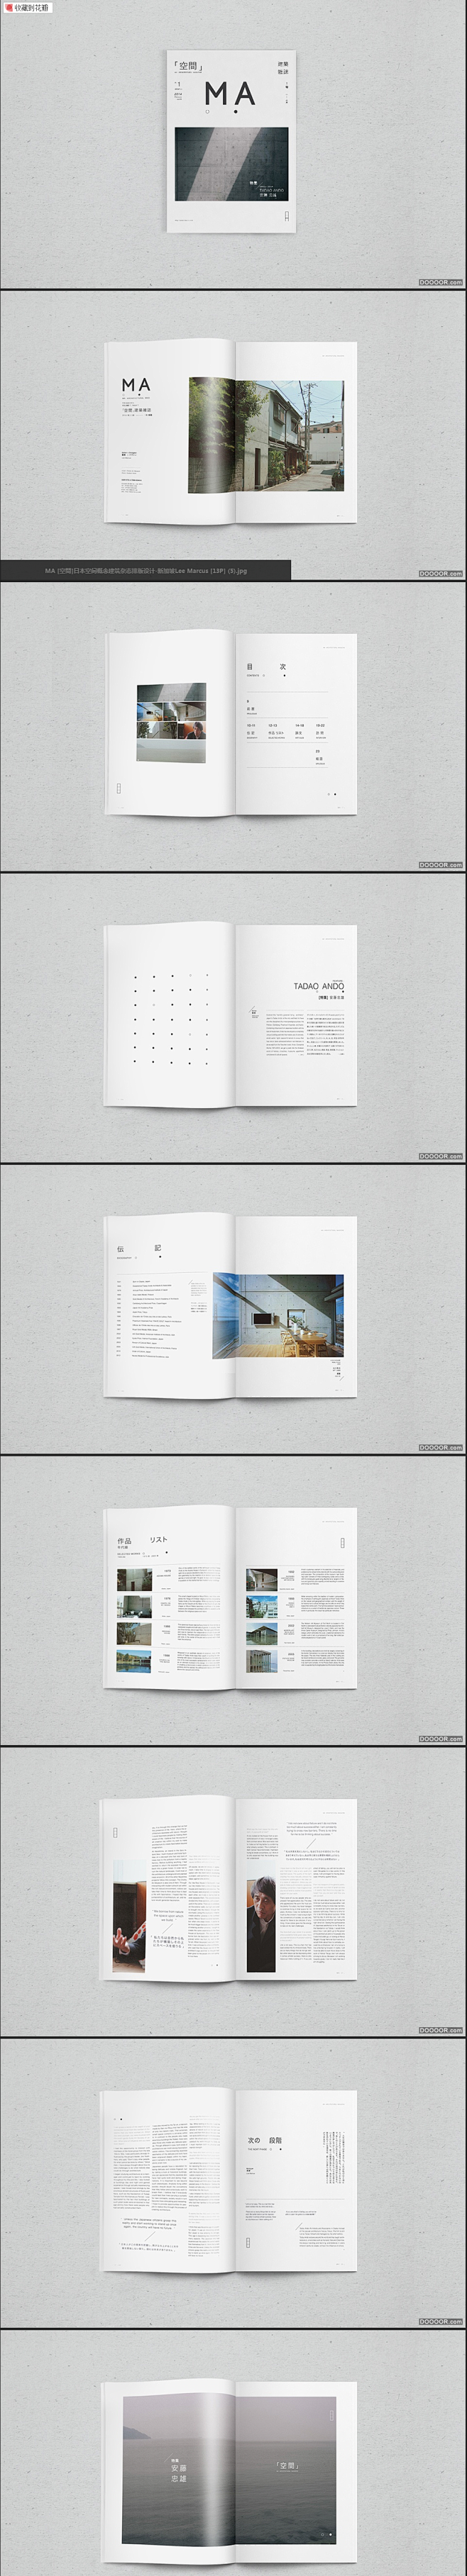 MA [空間]日本空间概念建筑杂志排版设...